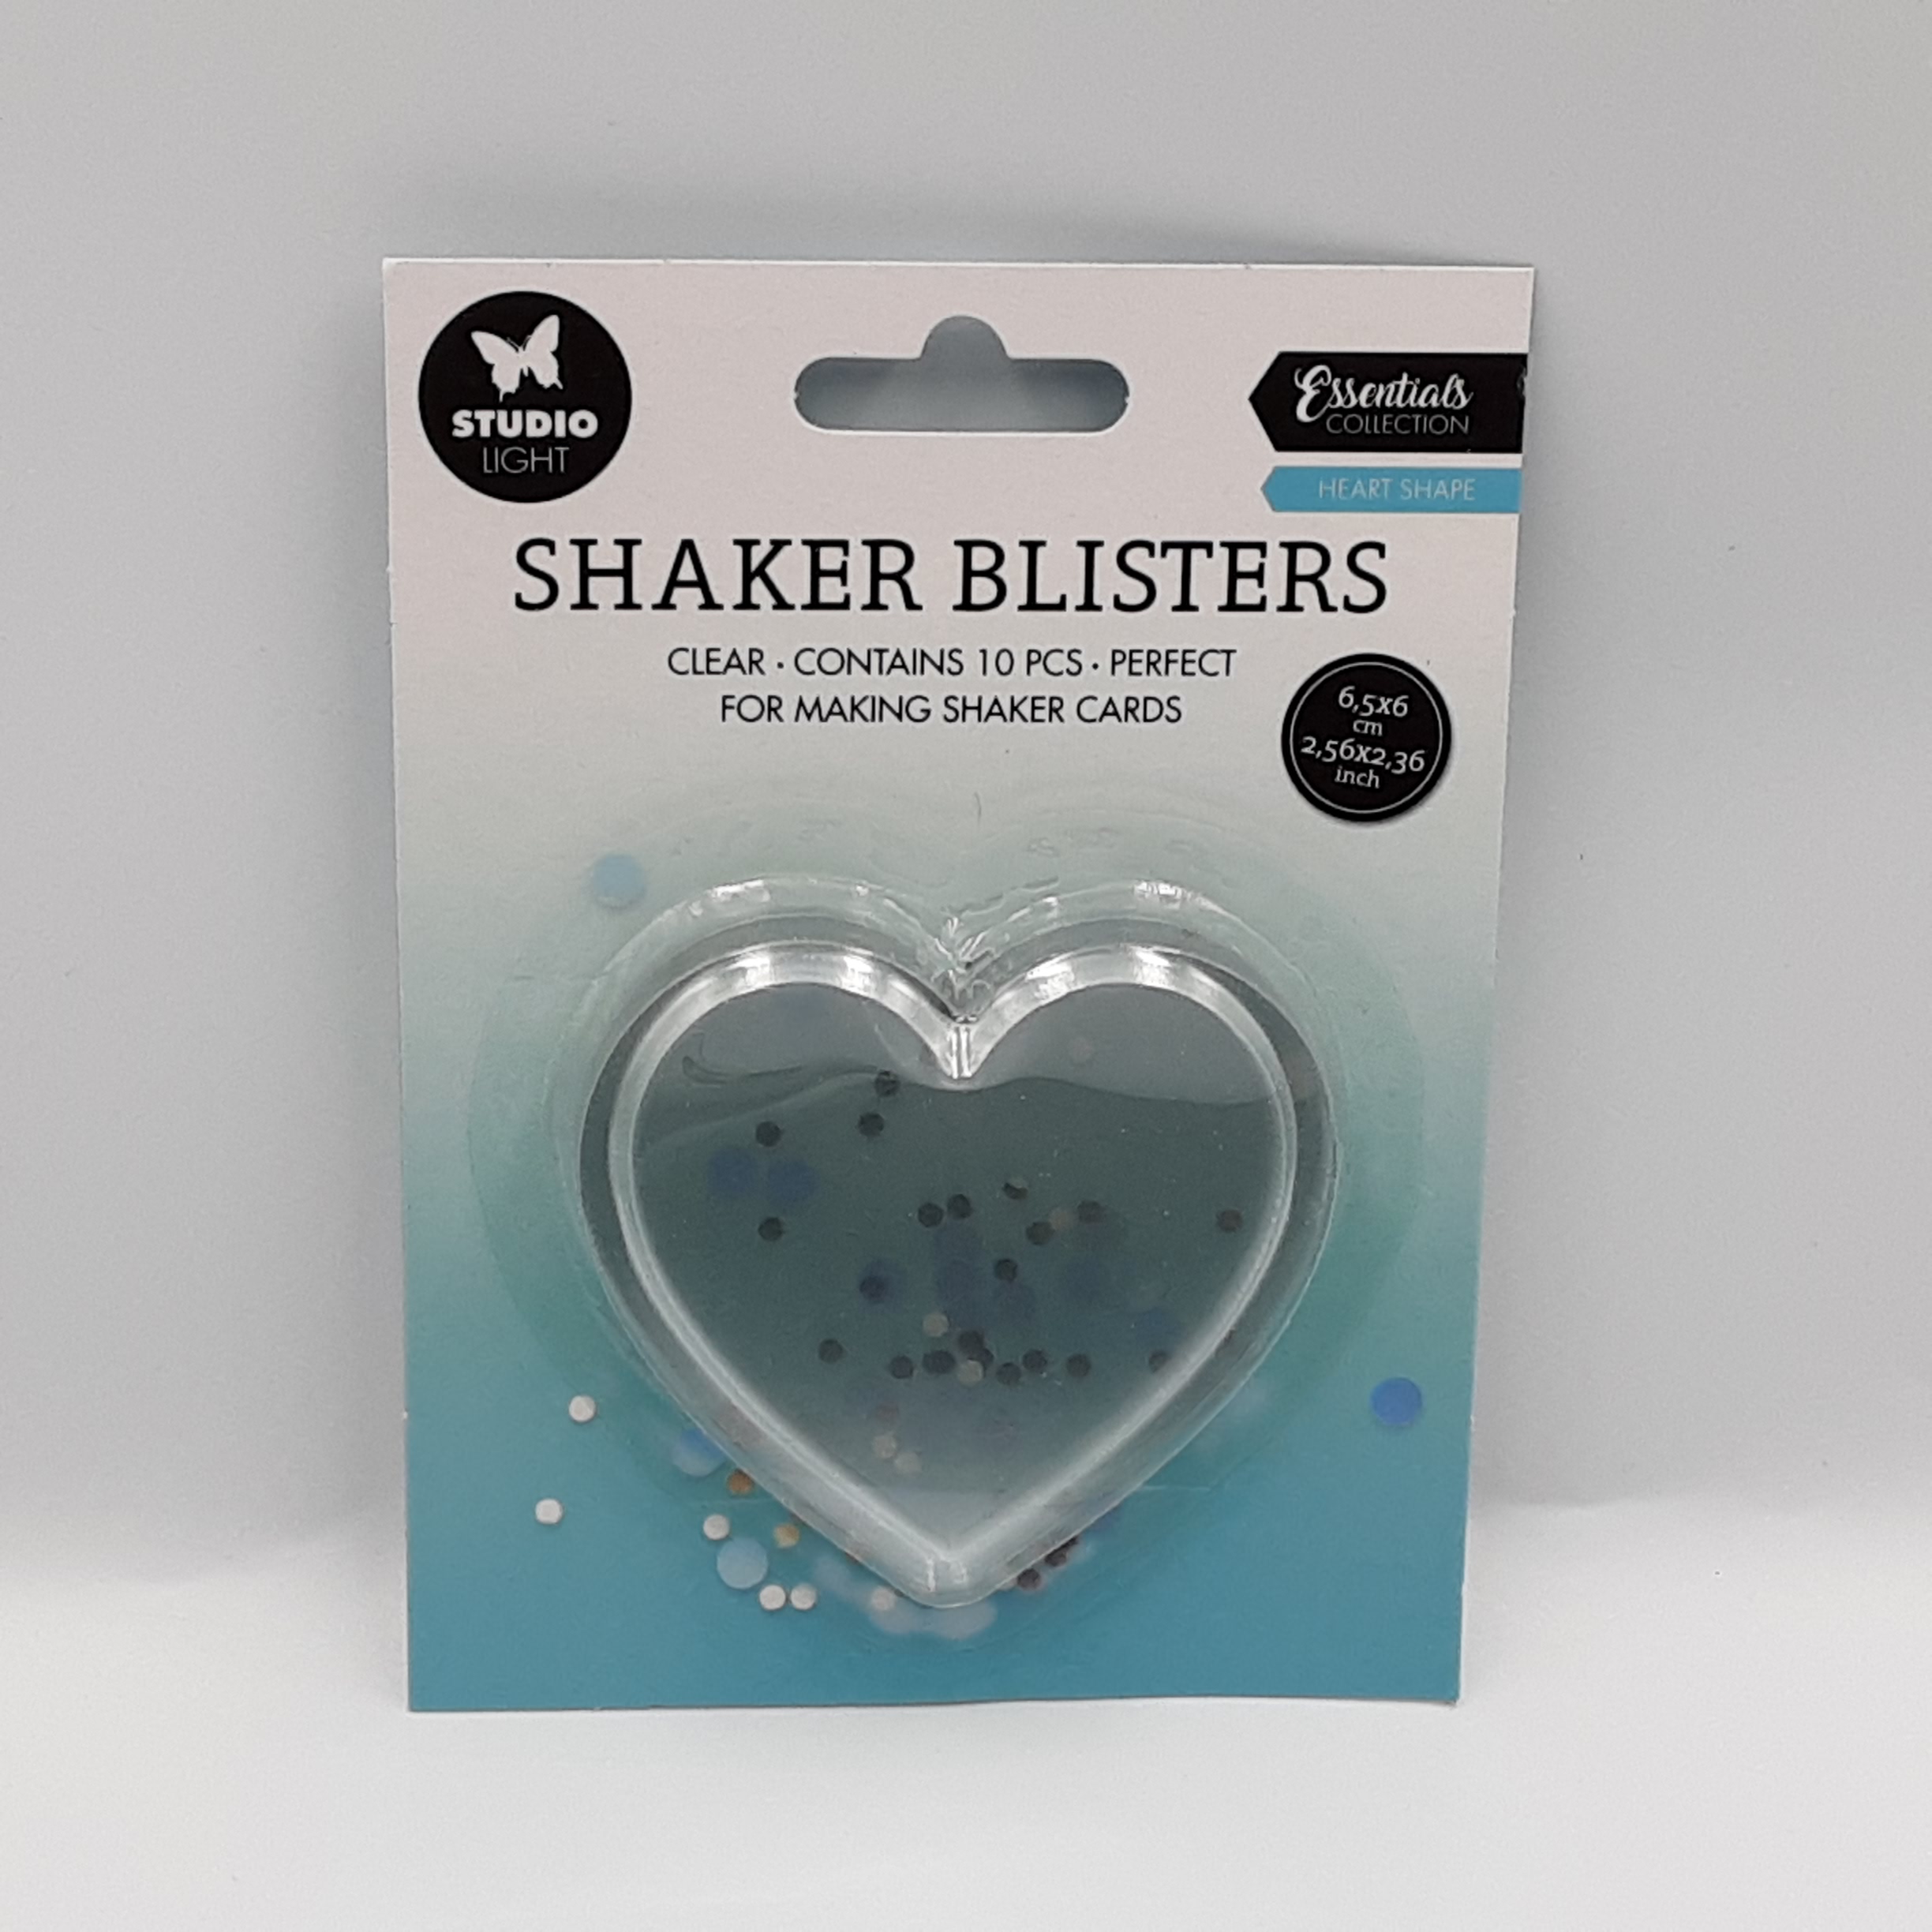 Shaker blister heart shape